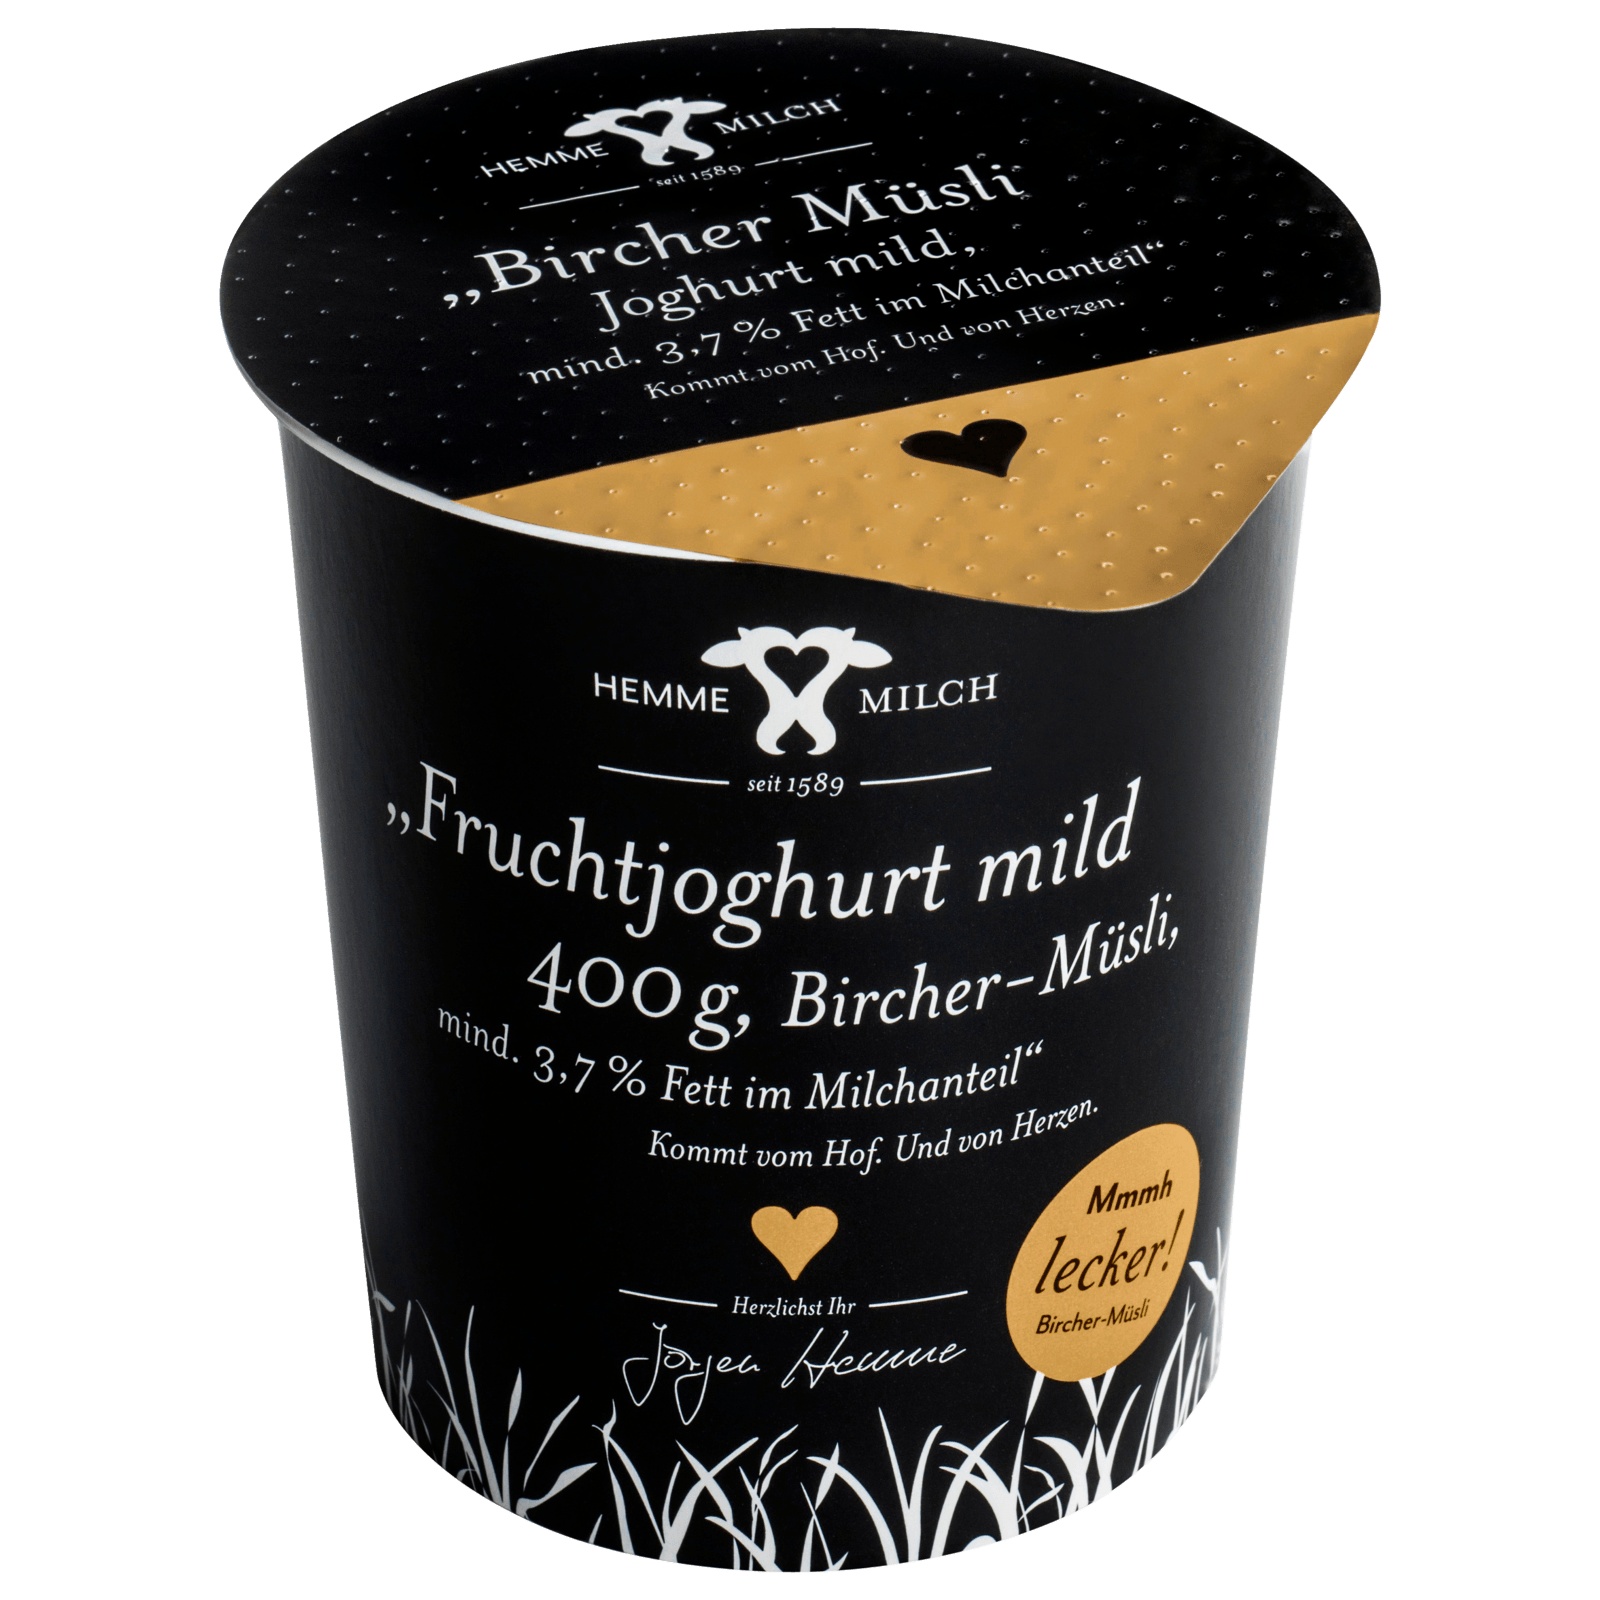 Hemme Milch Bircher Müsli Joghurt mild 400g  für 1.49 EUR